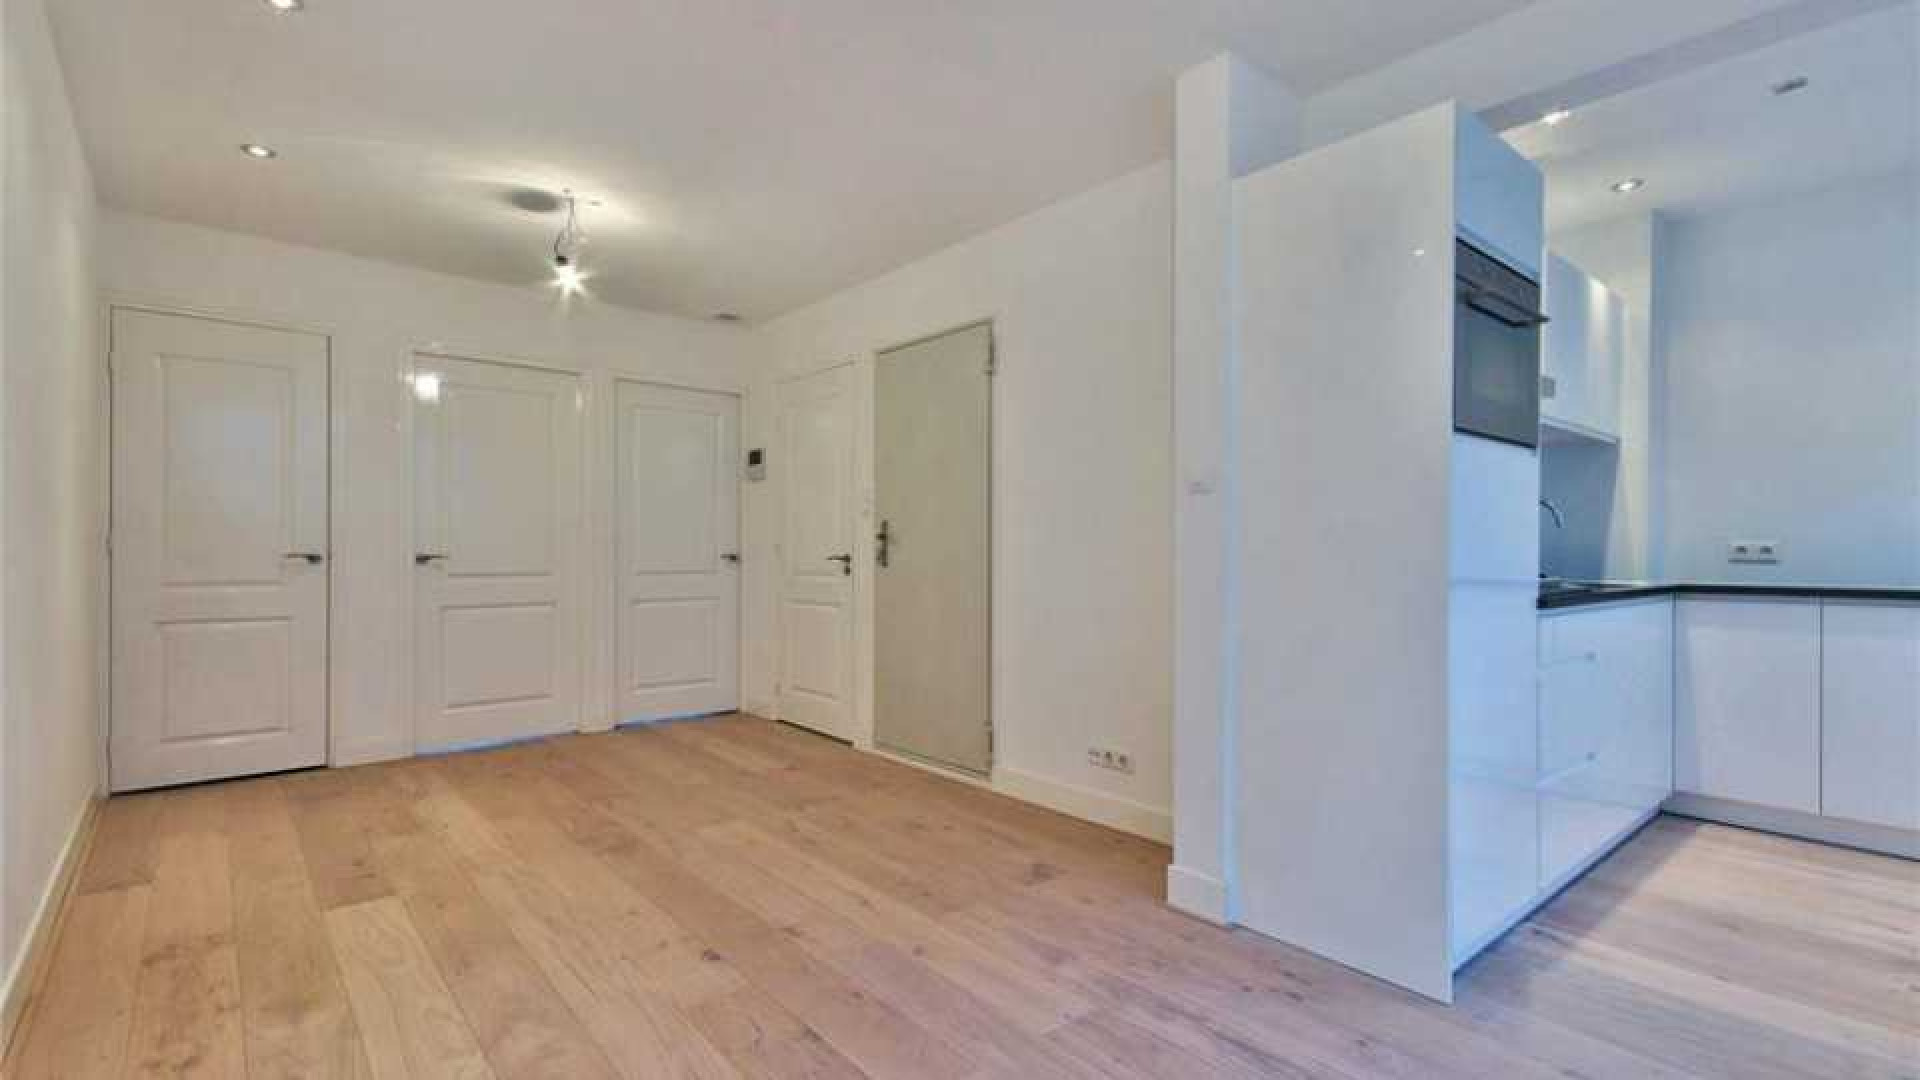 Bondscoach Danny Blind koopt appartement met uitzicht op de Amstel. Zie foto's